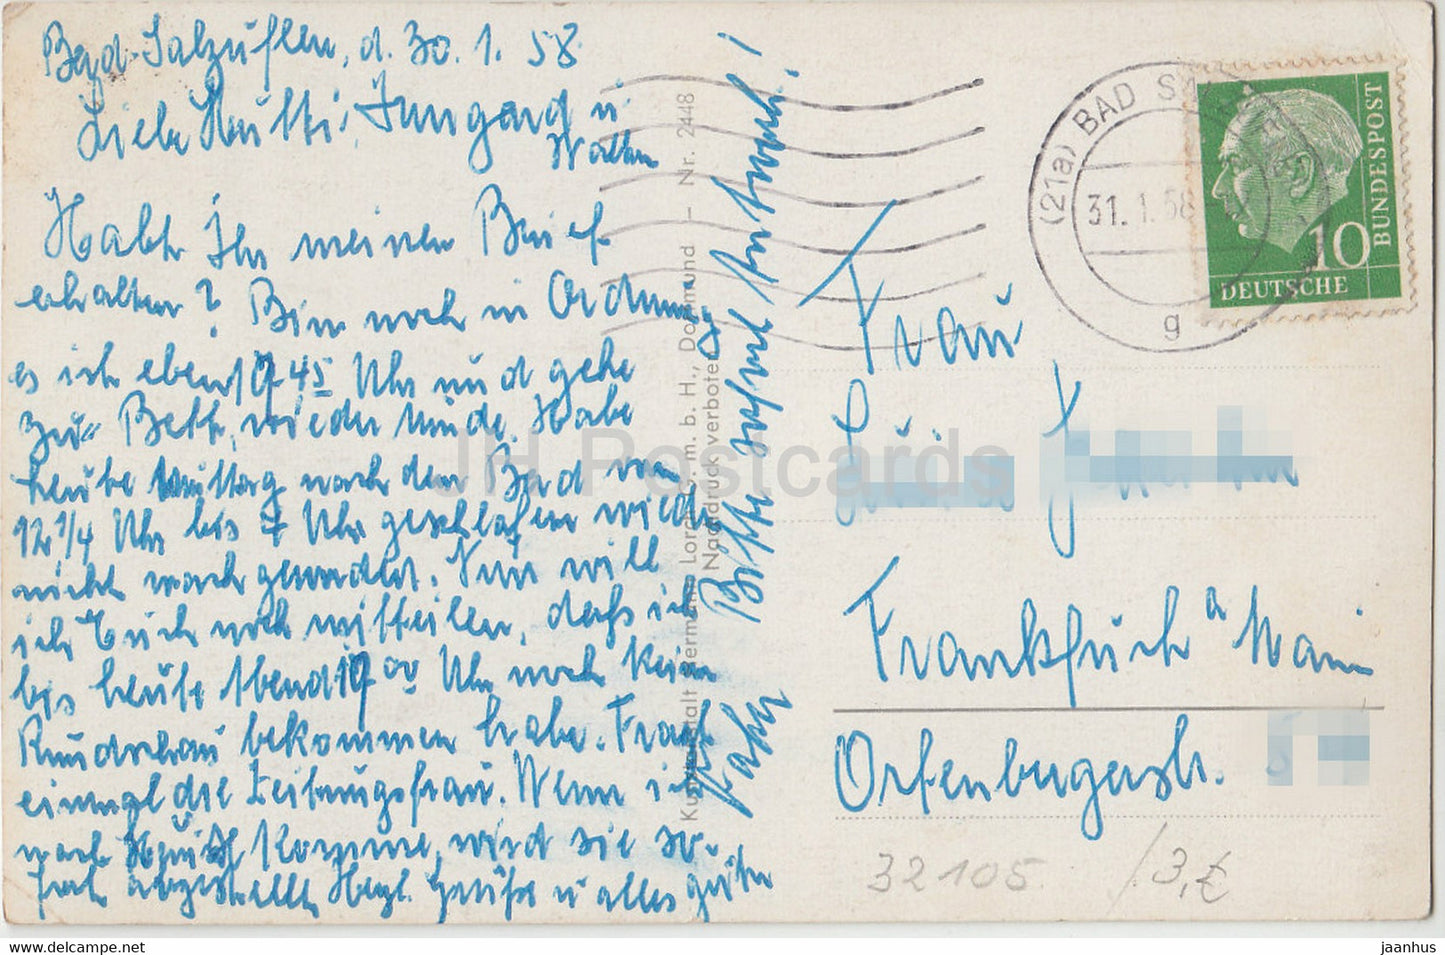 Bad Salzuflen - Kurhaus - Kurpark - Leuchtfontane - Leopoldsprudel - Schwaghow - alte Postkarte - 1958 - Deutschland - gebraucht